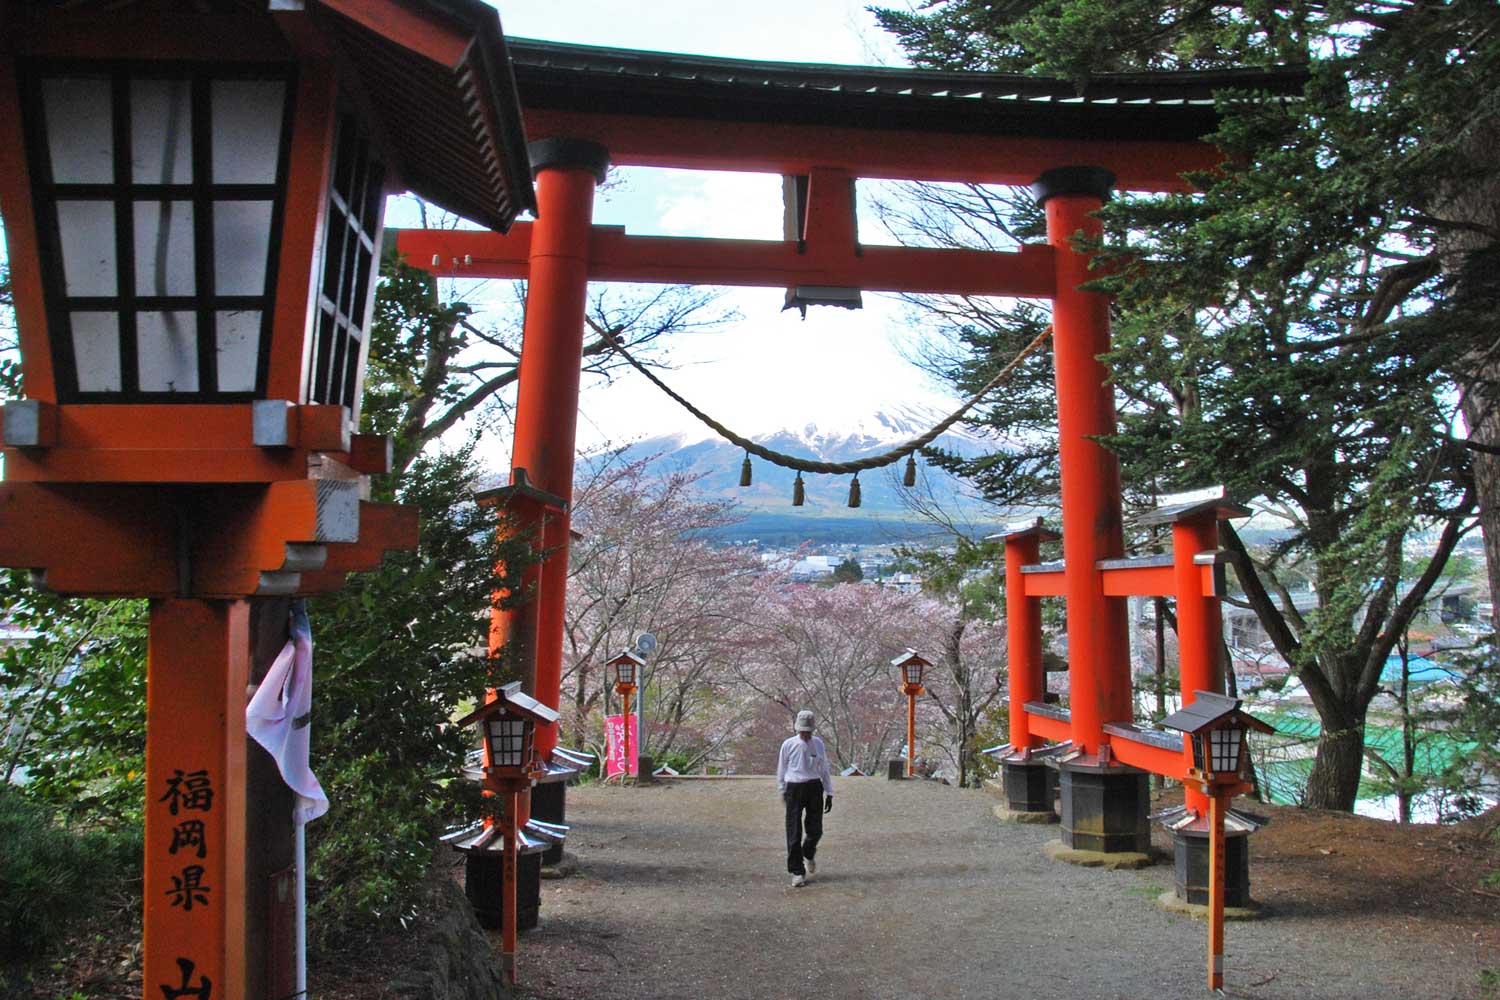 kawaguchiko-2016-fuji-chureito-pagode-torii